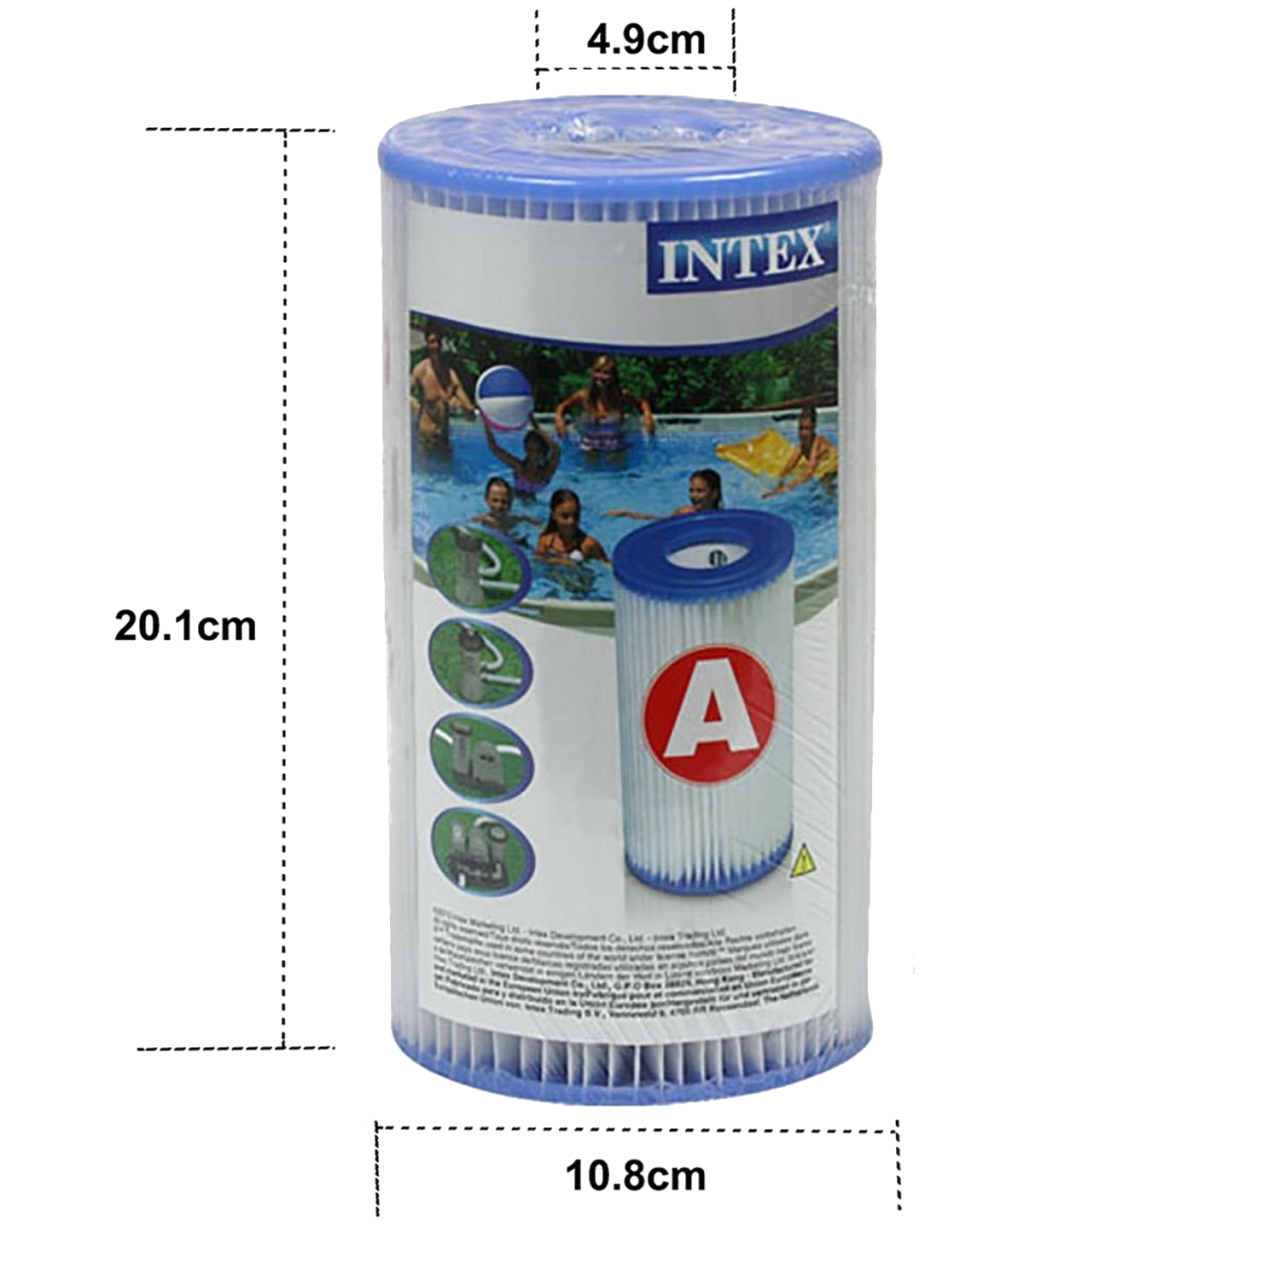 Intex 6x Filterkartuschen 29000 Pool Ersatzfilter Typ A 6 Stück für Filterpumpe